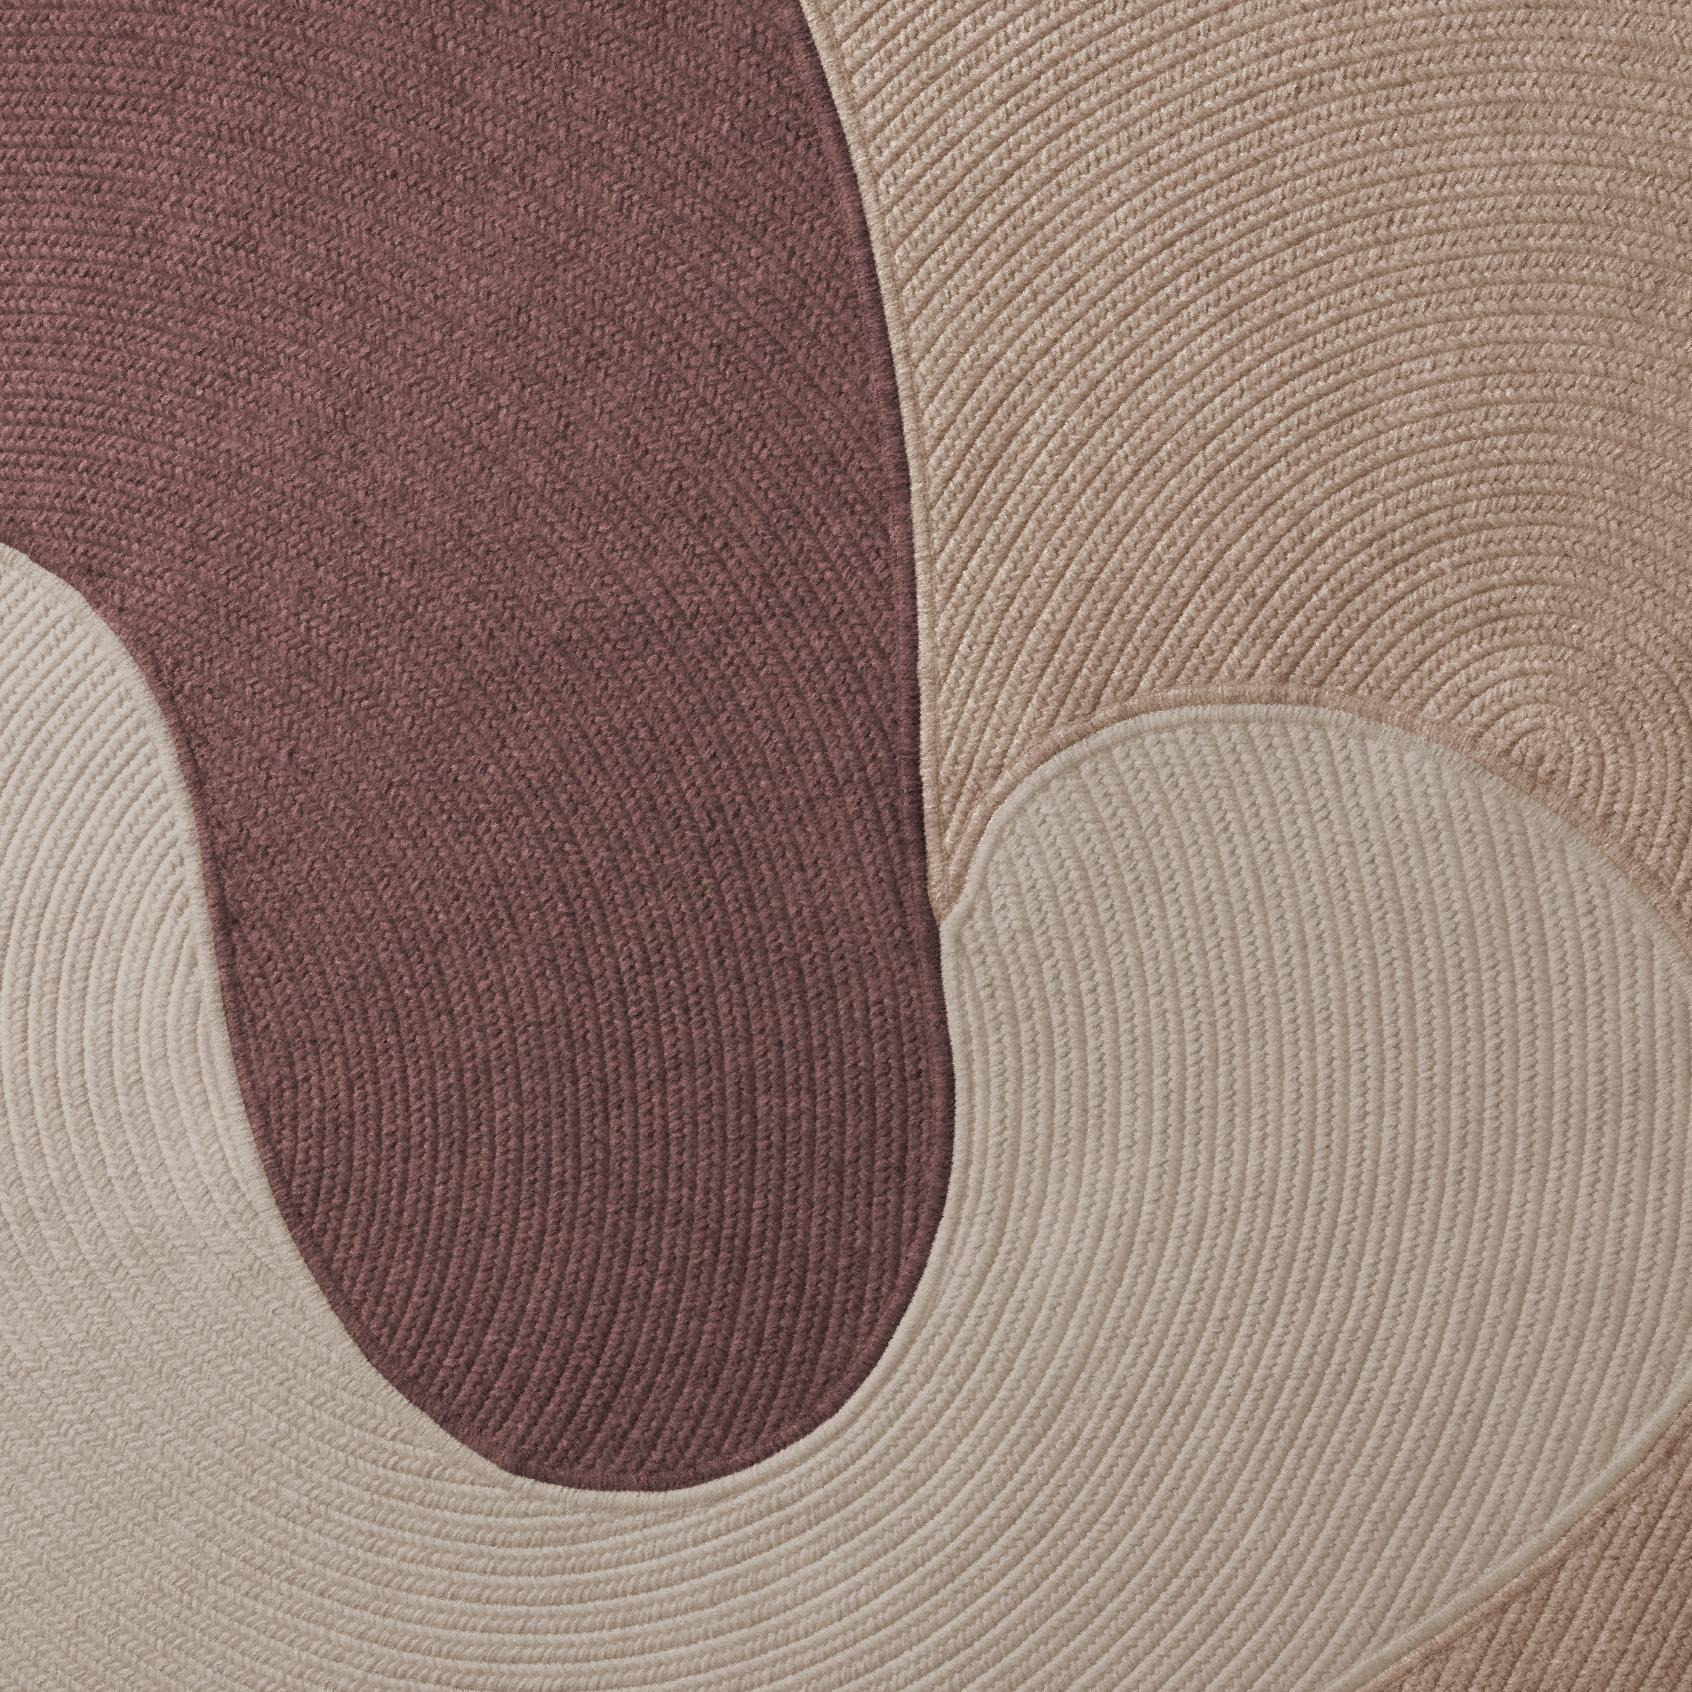 Diese Auflistung ist für einen 9 x 12 Teppich in den Farben, die im ersten Bild gezeigt werden, plus ein rug pad für Gebrauch auf harten Oberflächen.

Wir bieten eine Reihe von verschiedenen Farben an. Wir können die Farben des fotografierten